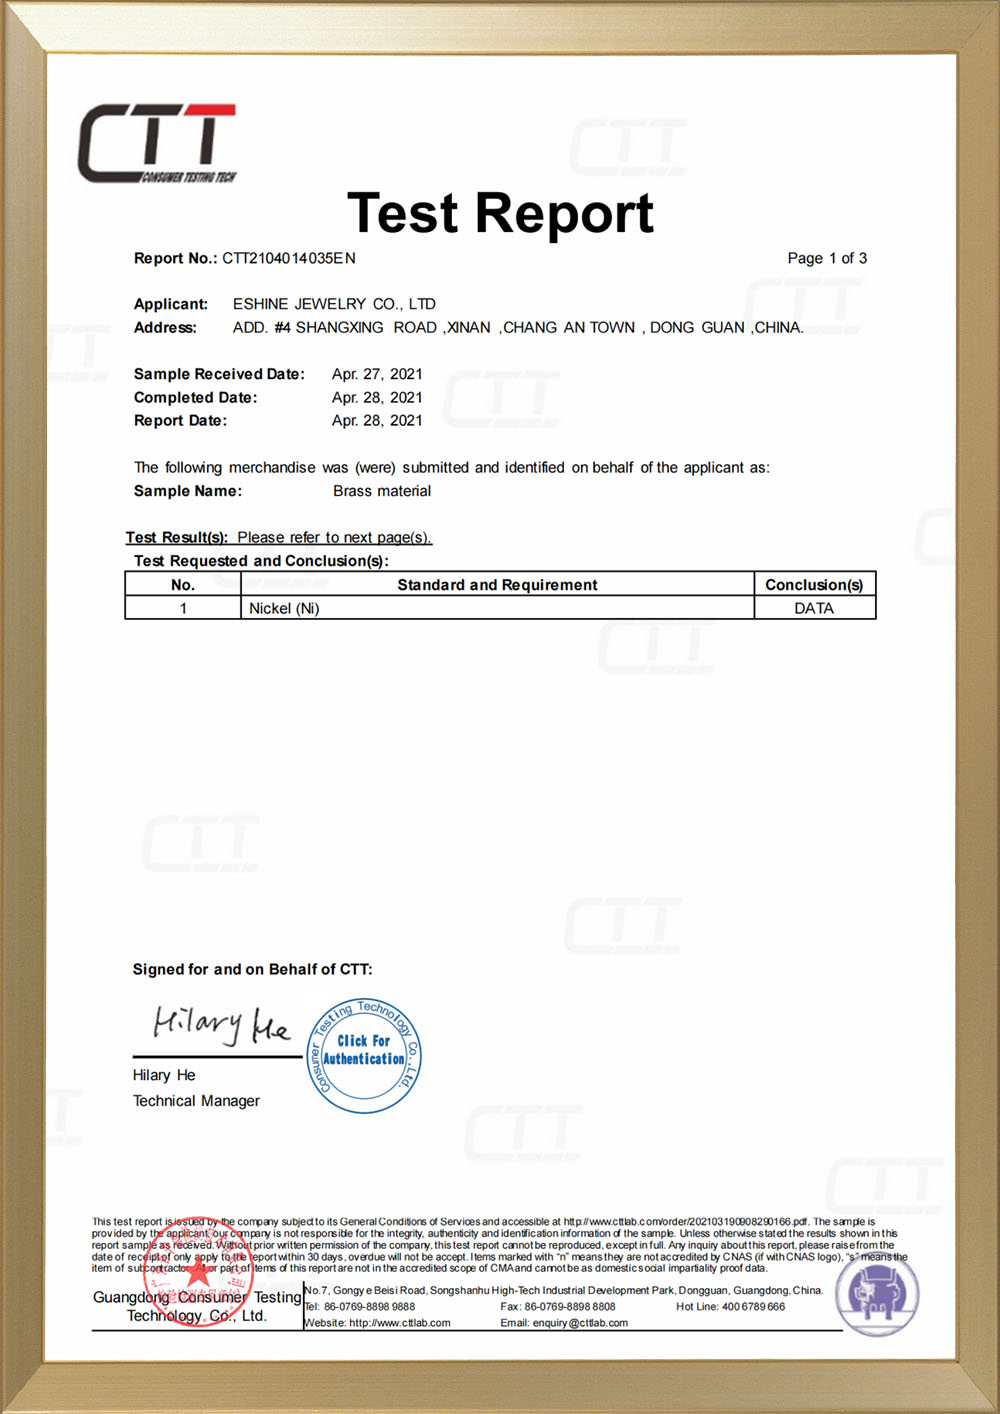 CTT izvještaj o testiranju bez nikla